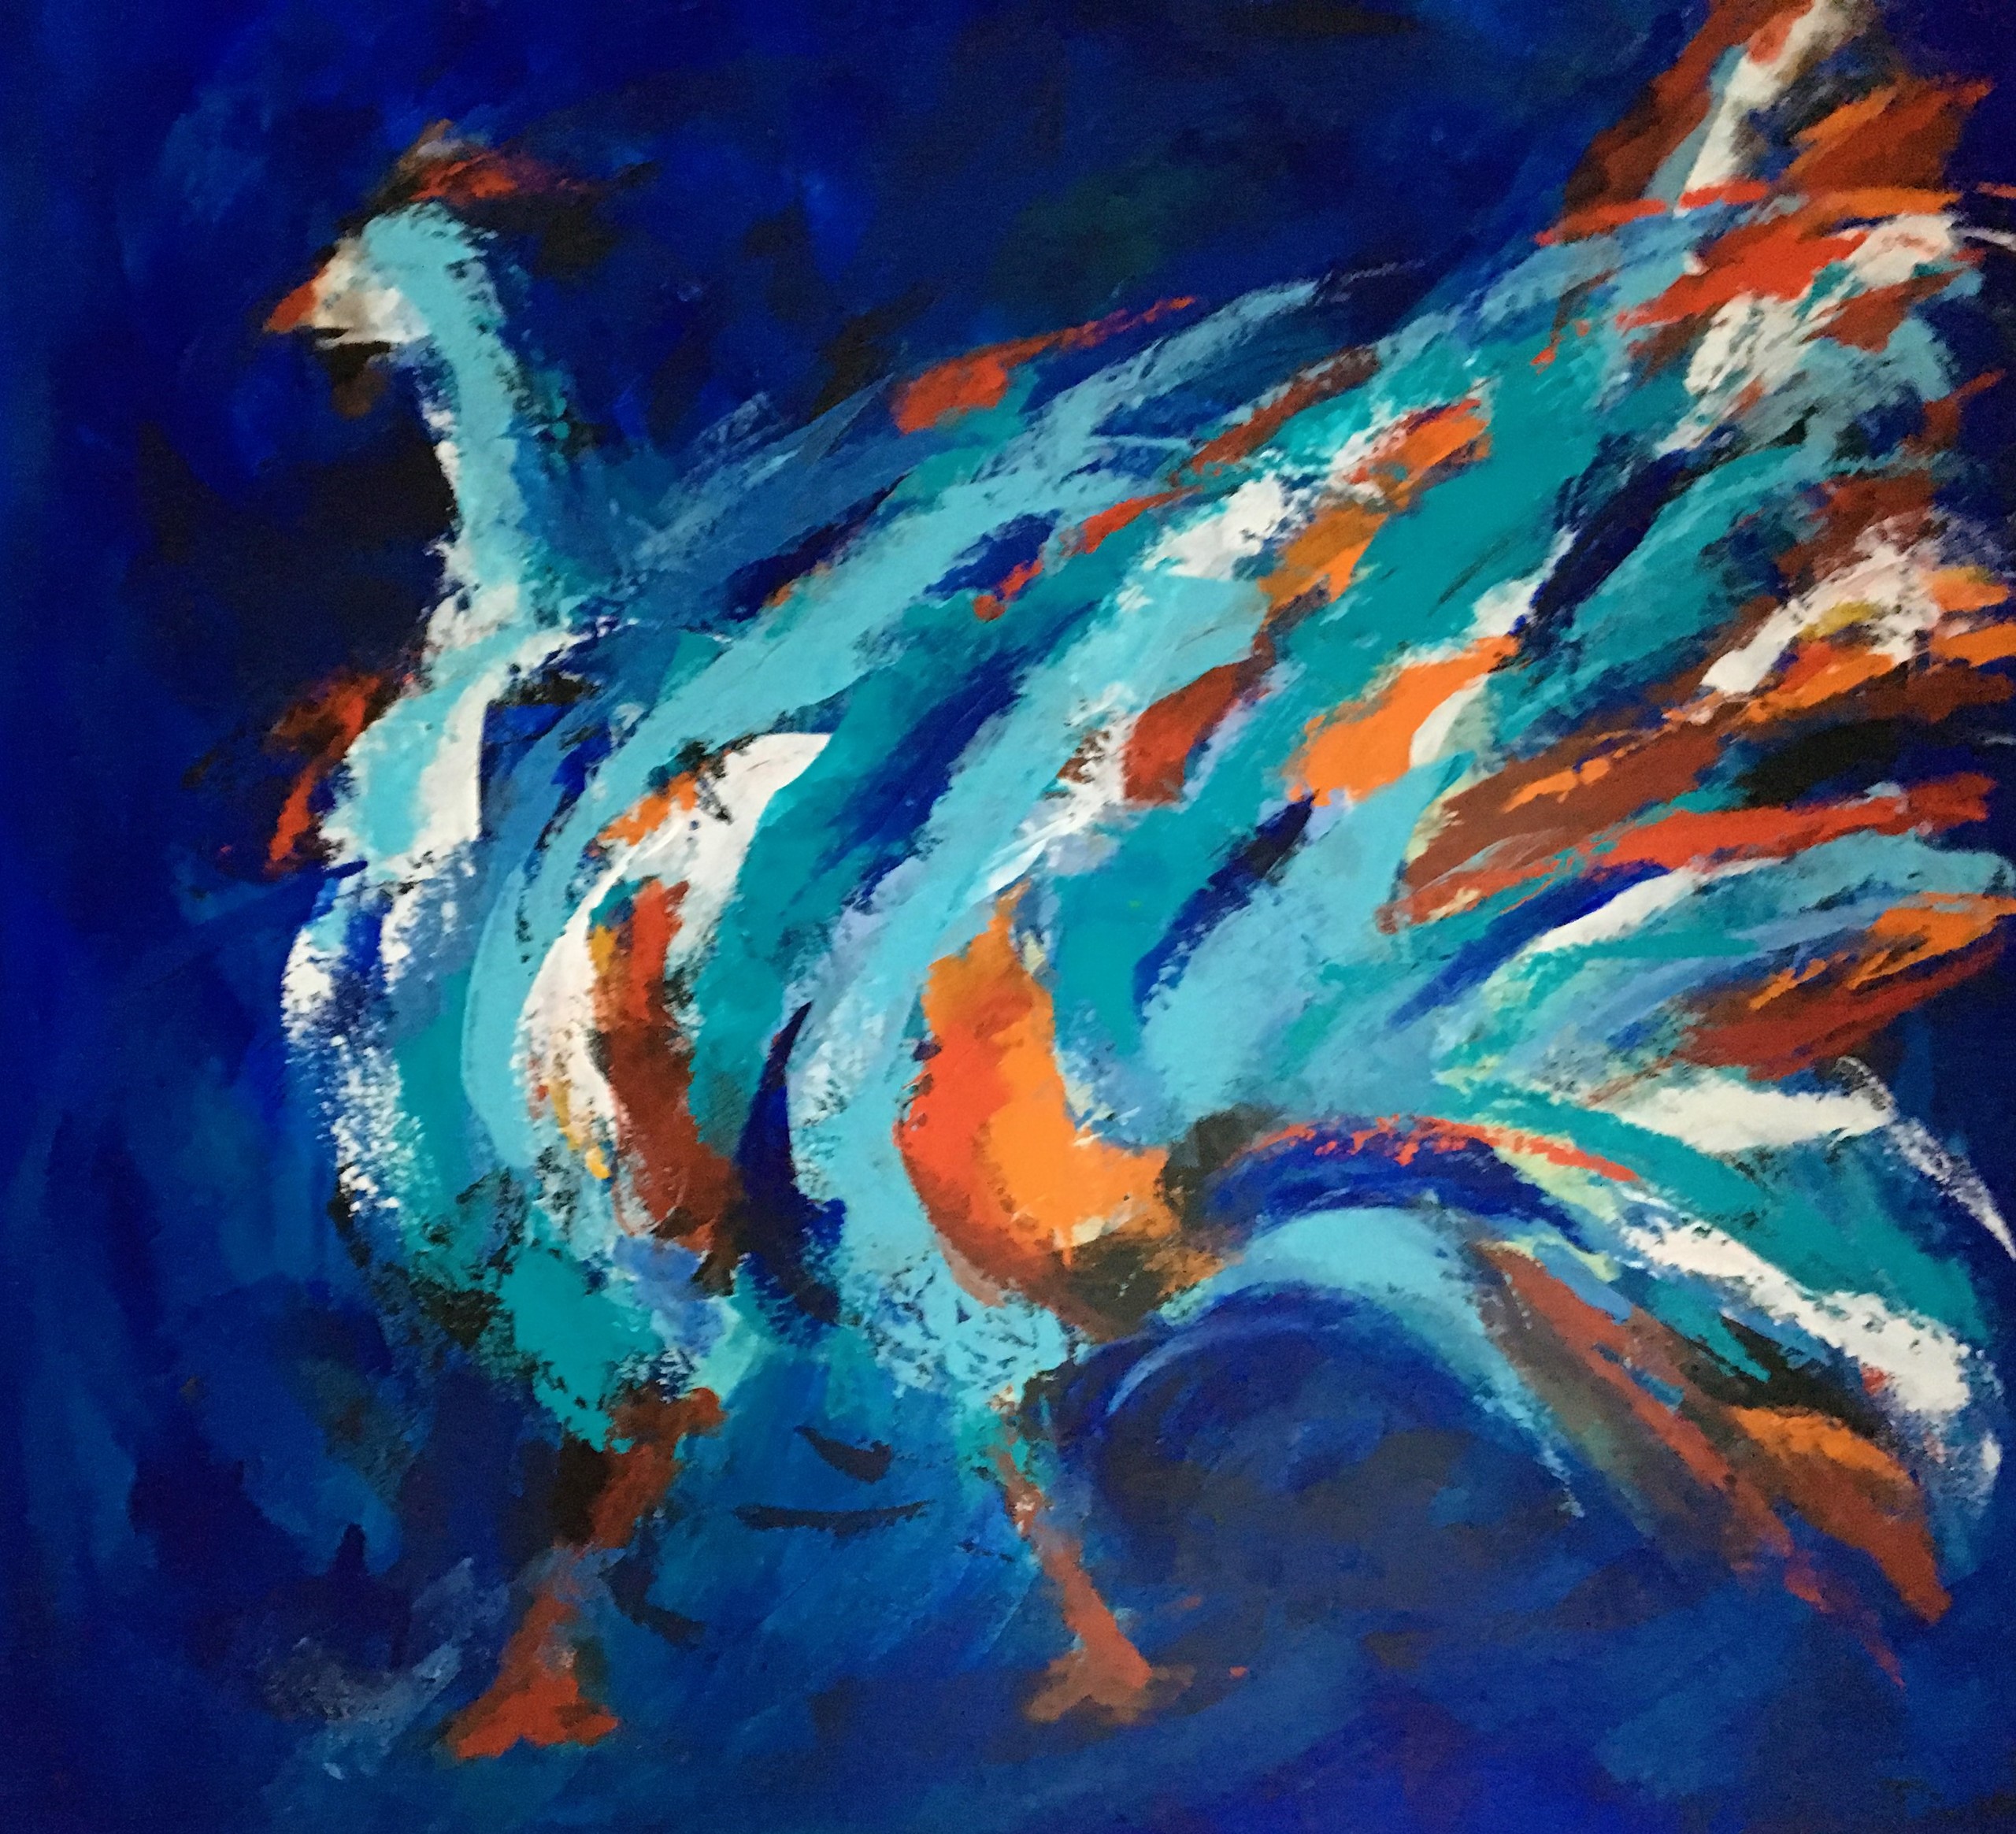 Abstrakt maleri i blå og brune jordfarver med dynamiske strøg, hvor du muligvis kan se en fugl - og dens smukke fjerpragt.